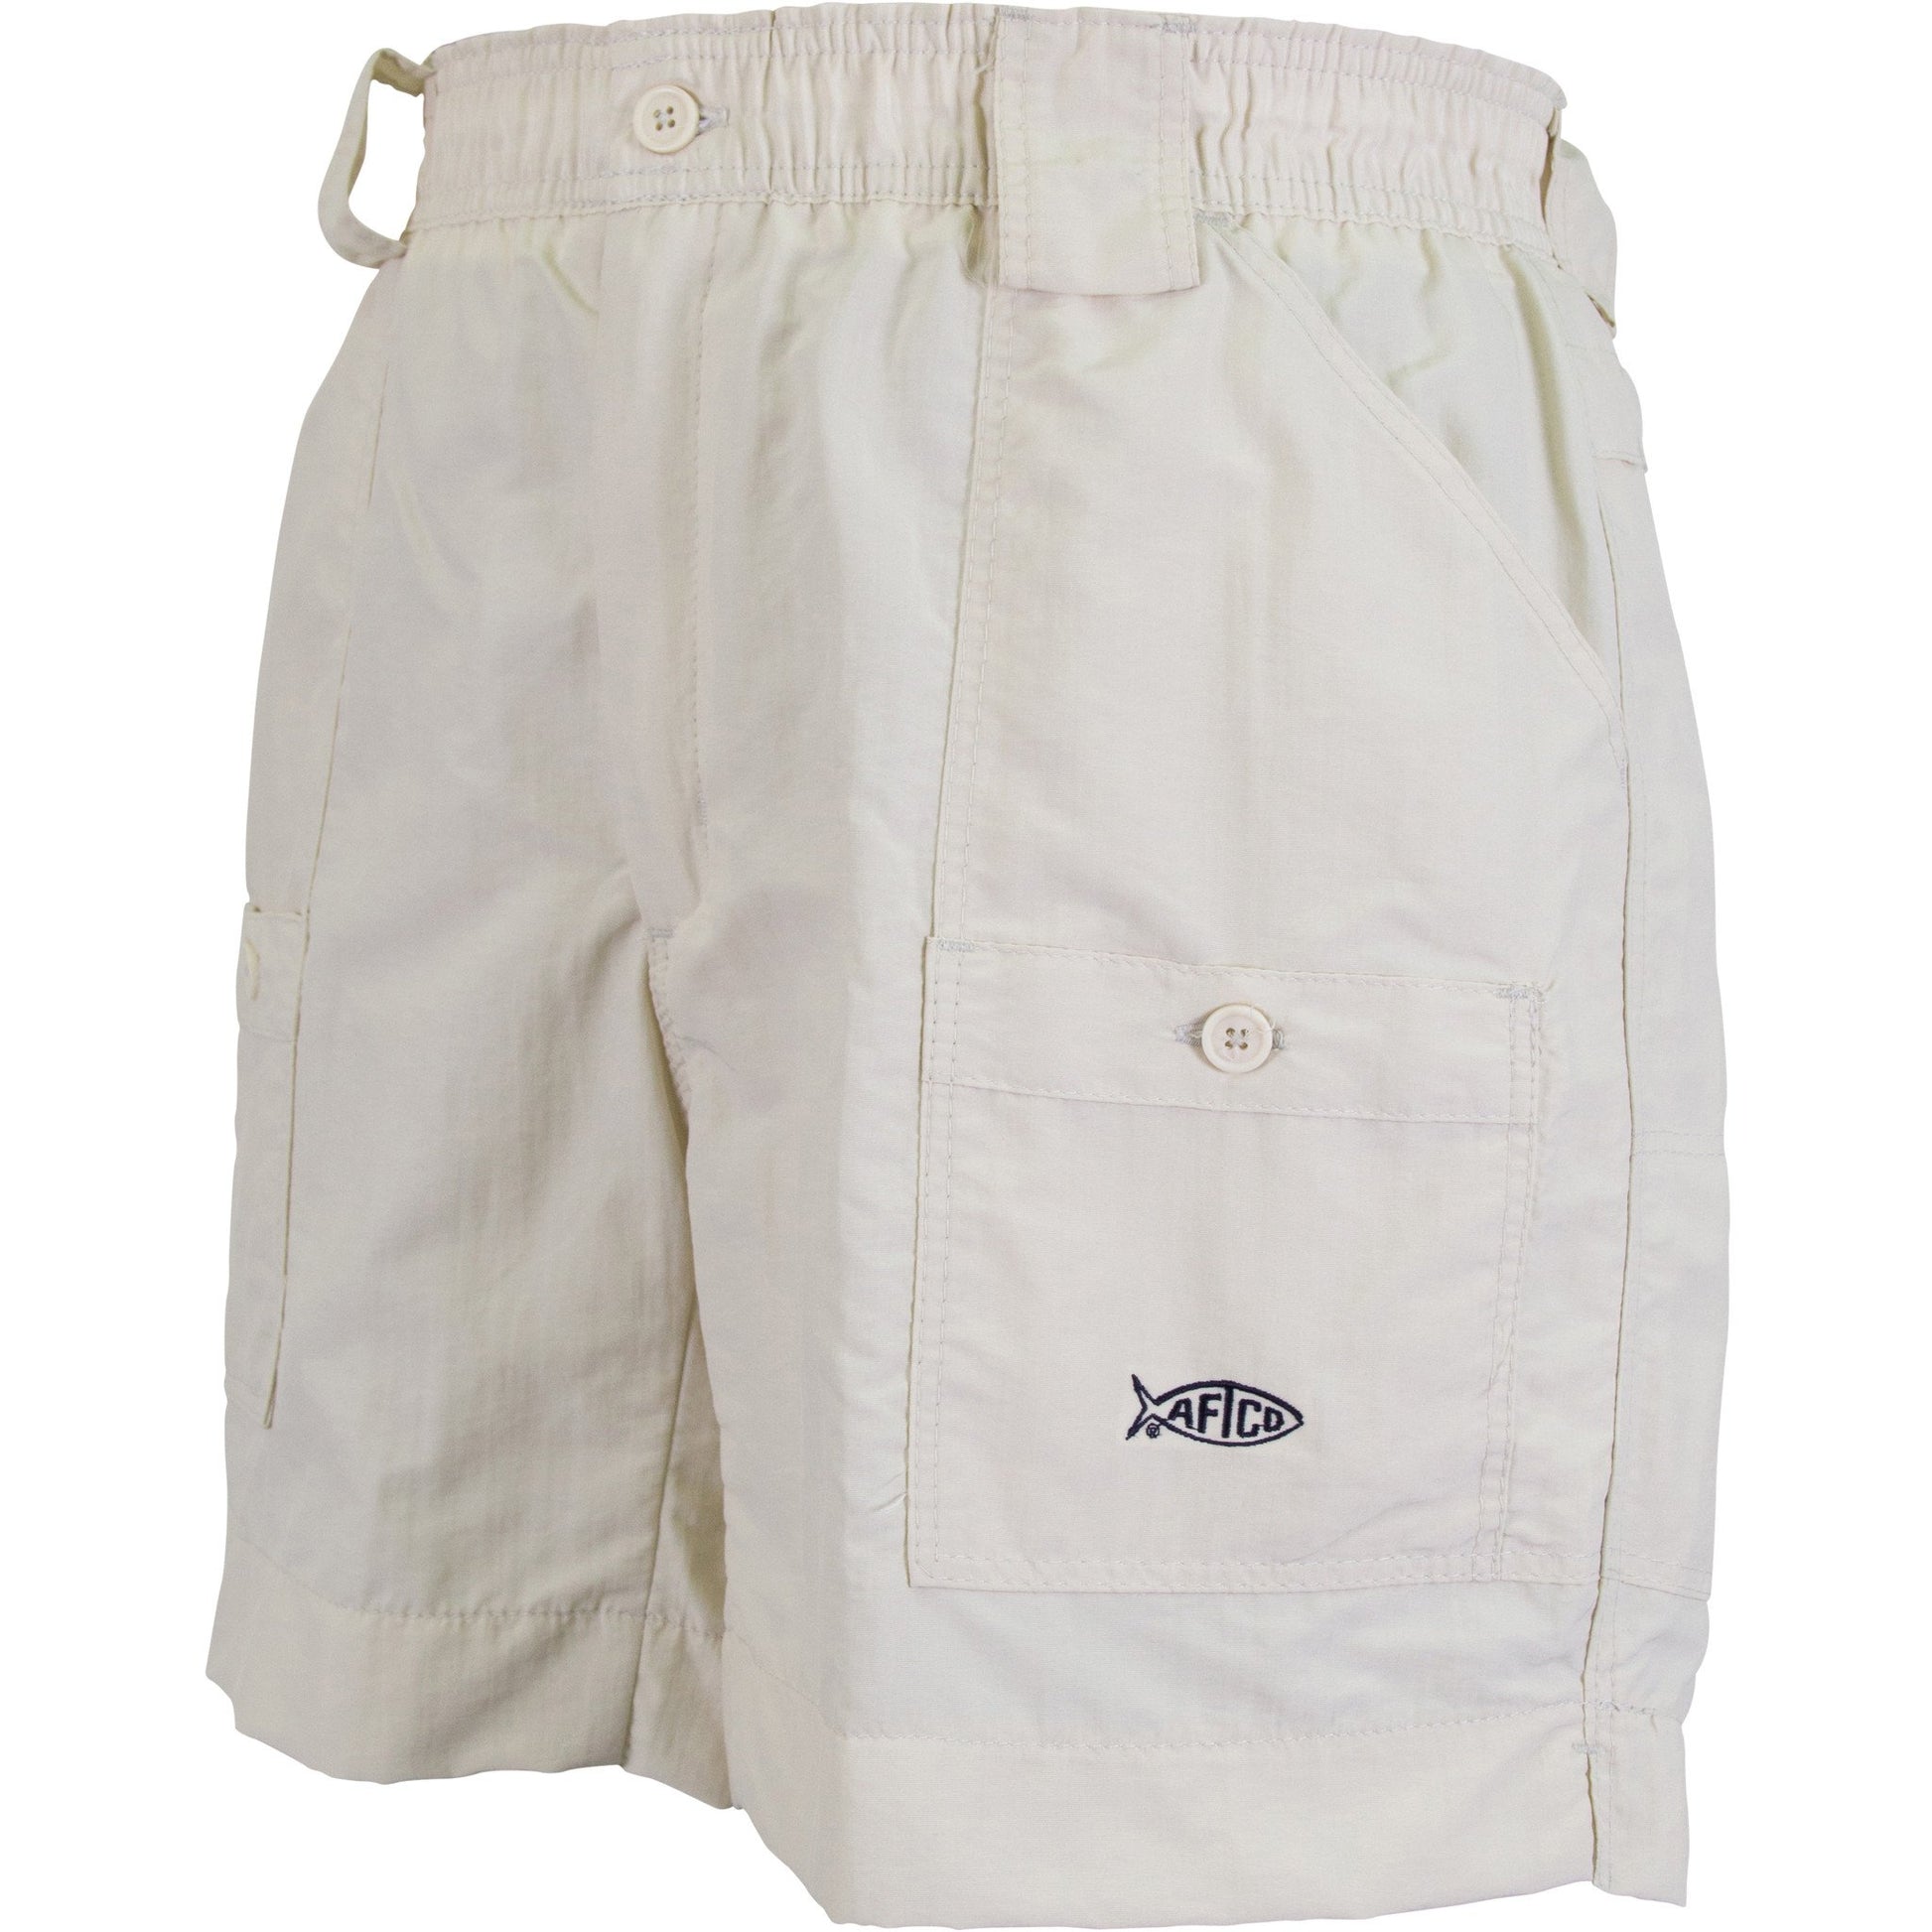 AFTCO Shorts - Natural – The Shirt Shop